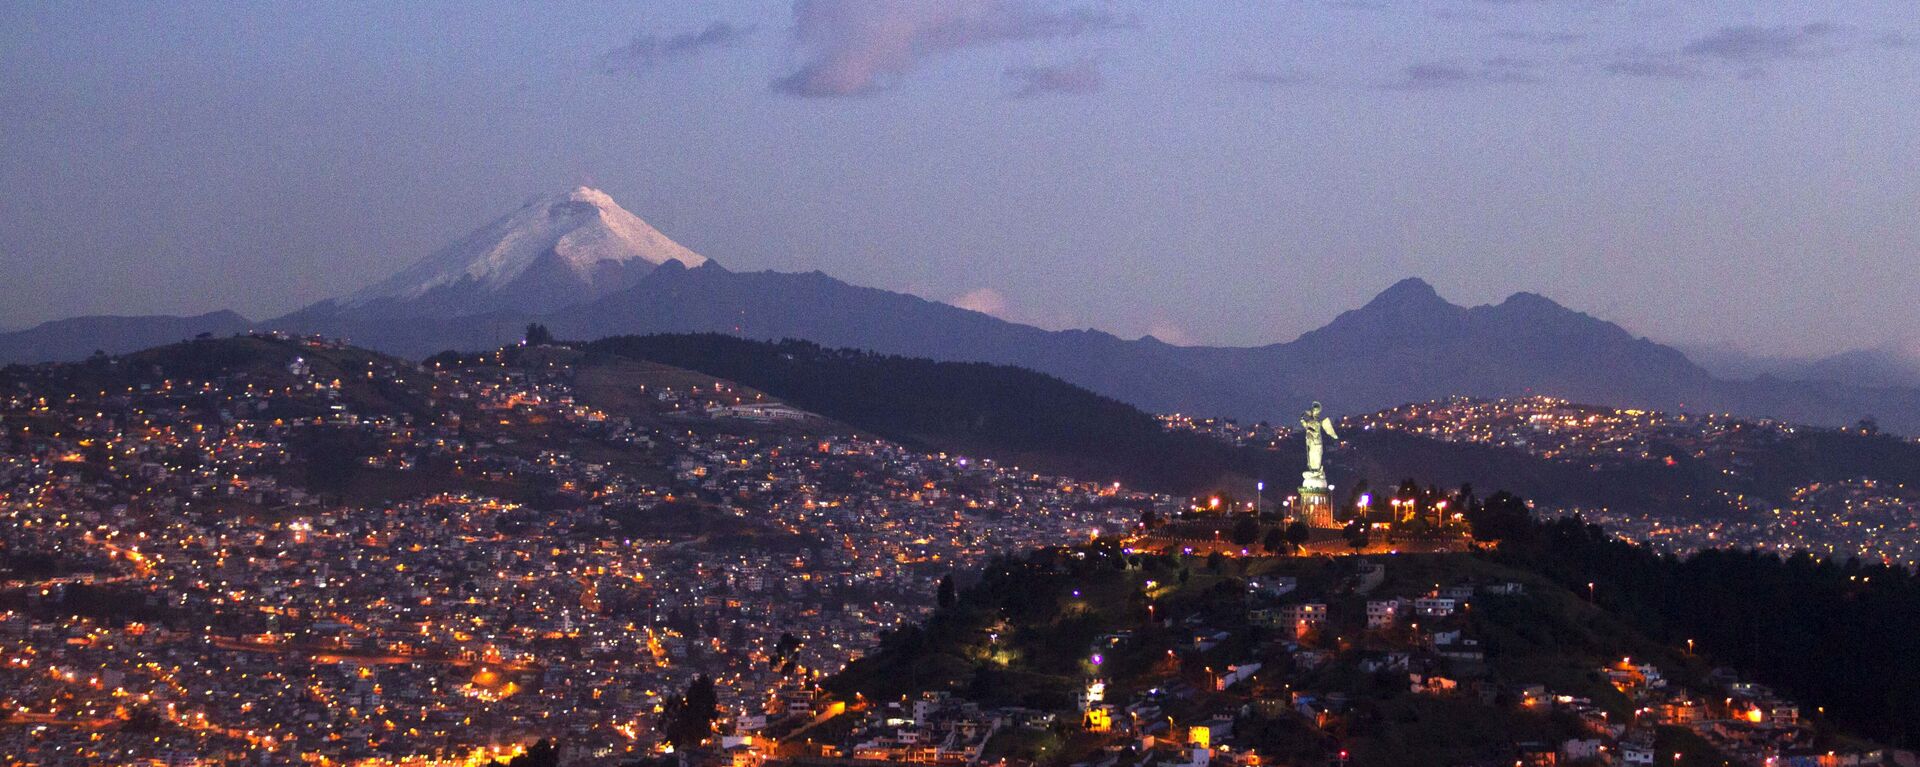 Quito, la capital de Ecuador  - Sputnik Mundo, 1920, 04.02.2021